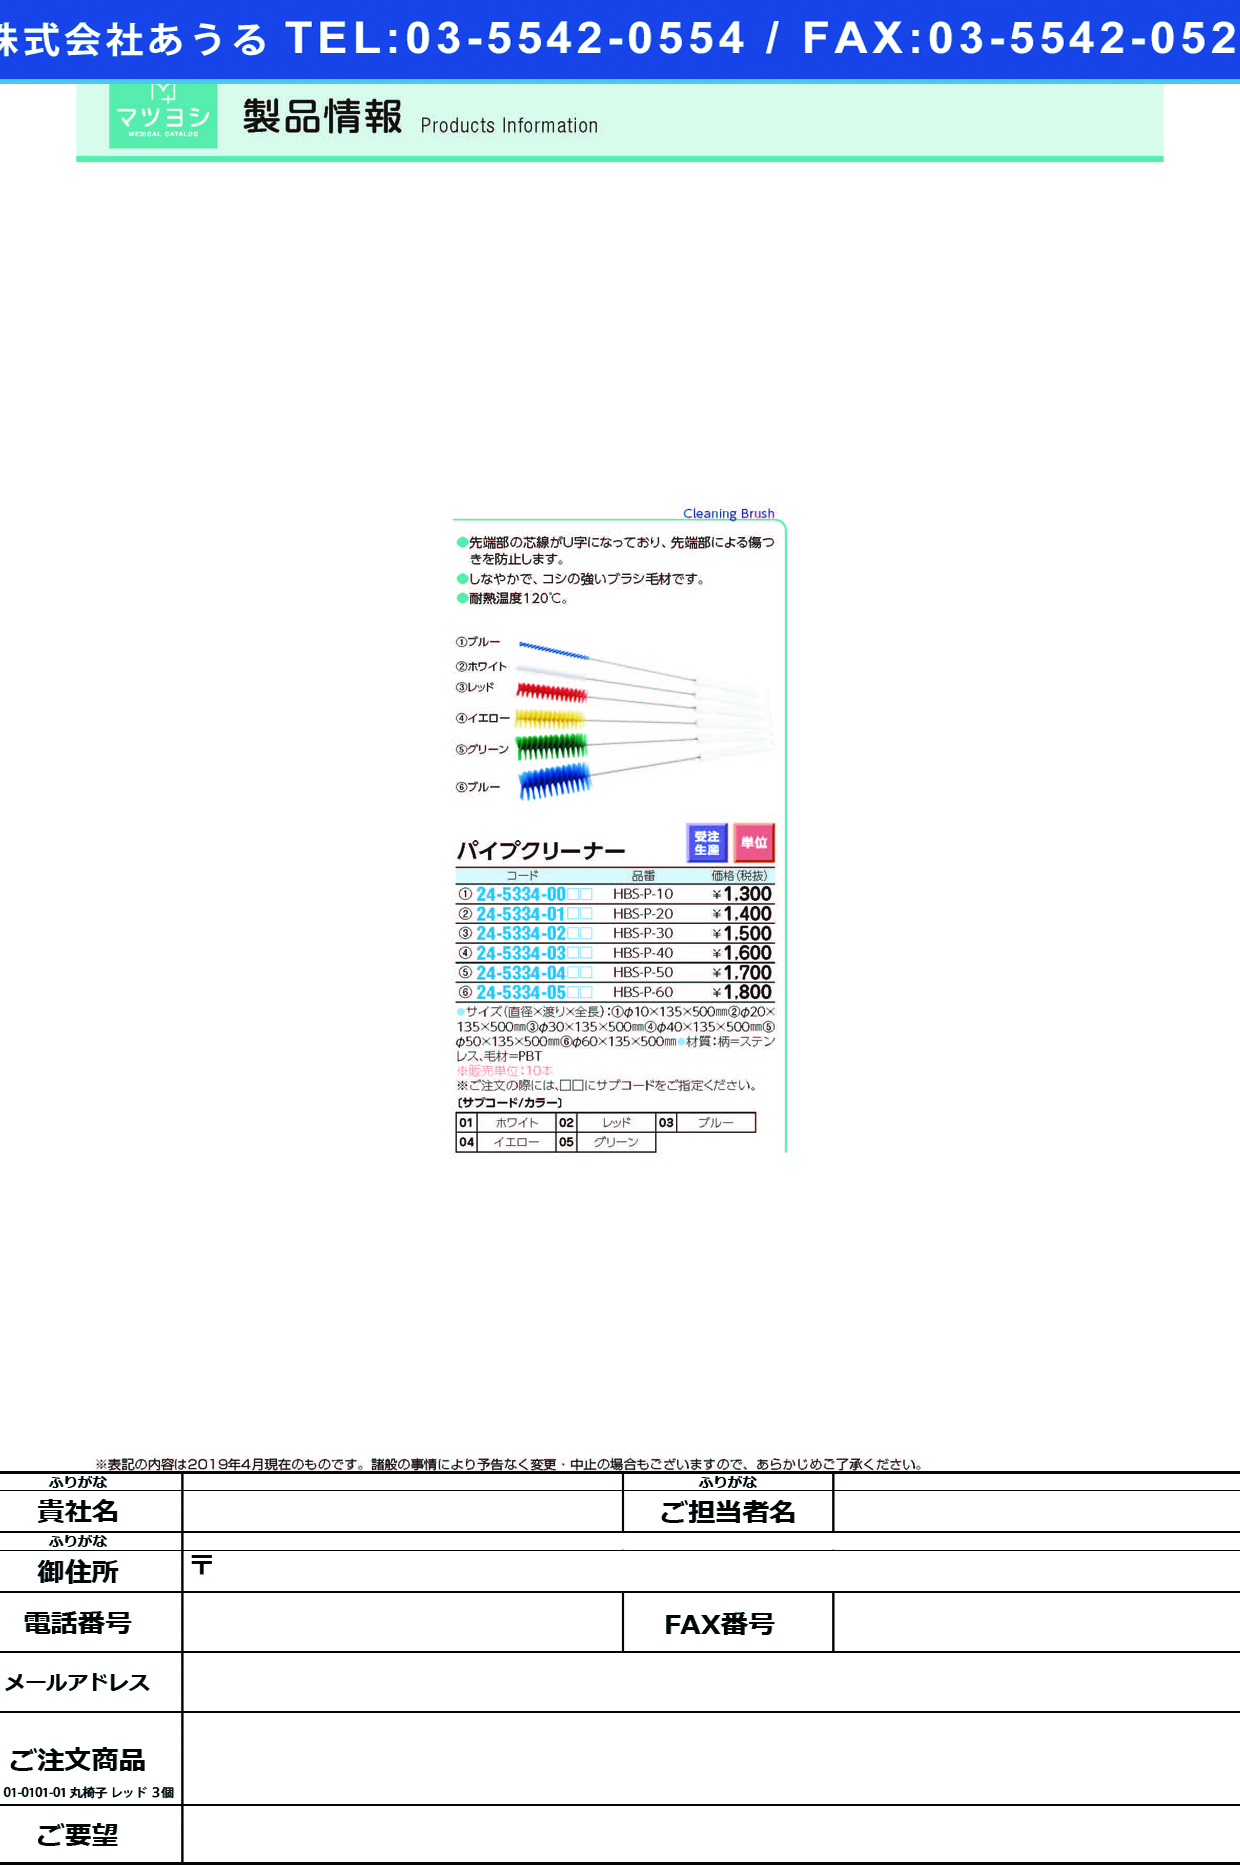 (24-5334-04)パイプクリーナー HBS-P-50 ﾊﾟｲﾌﾟｸﾘｰﾅｰ レッド【10本単位】【2019年カタログ商品】